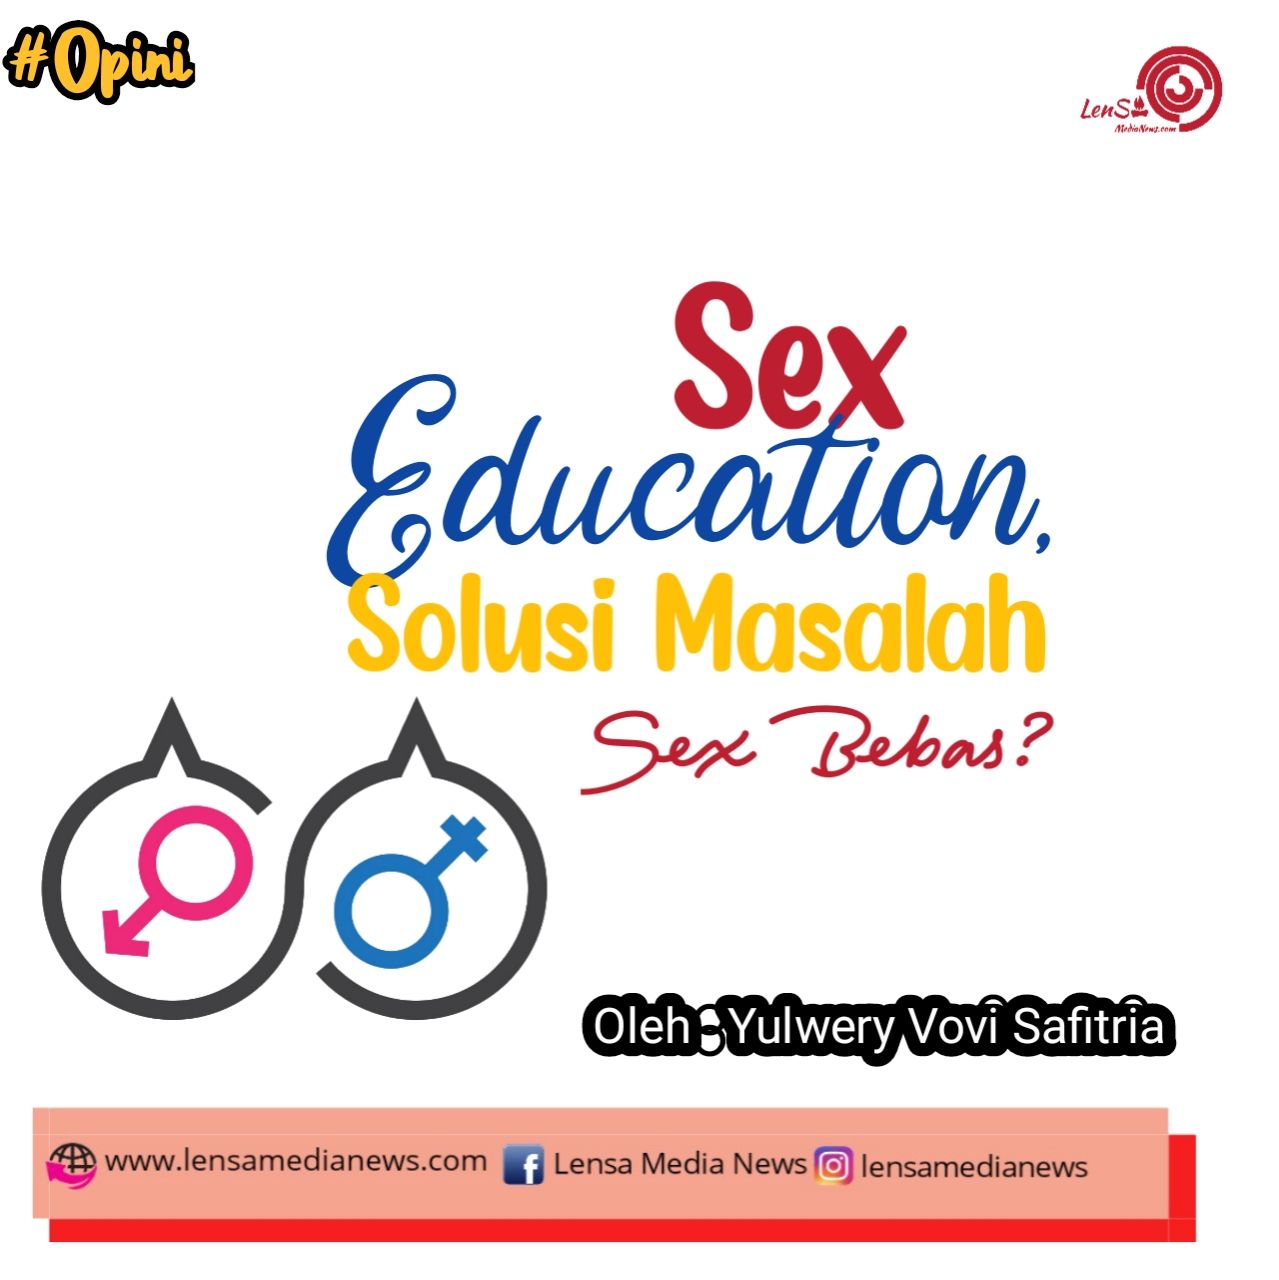 Sex Education Solusi Masalah Seks Bebas Lensa Medianews 